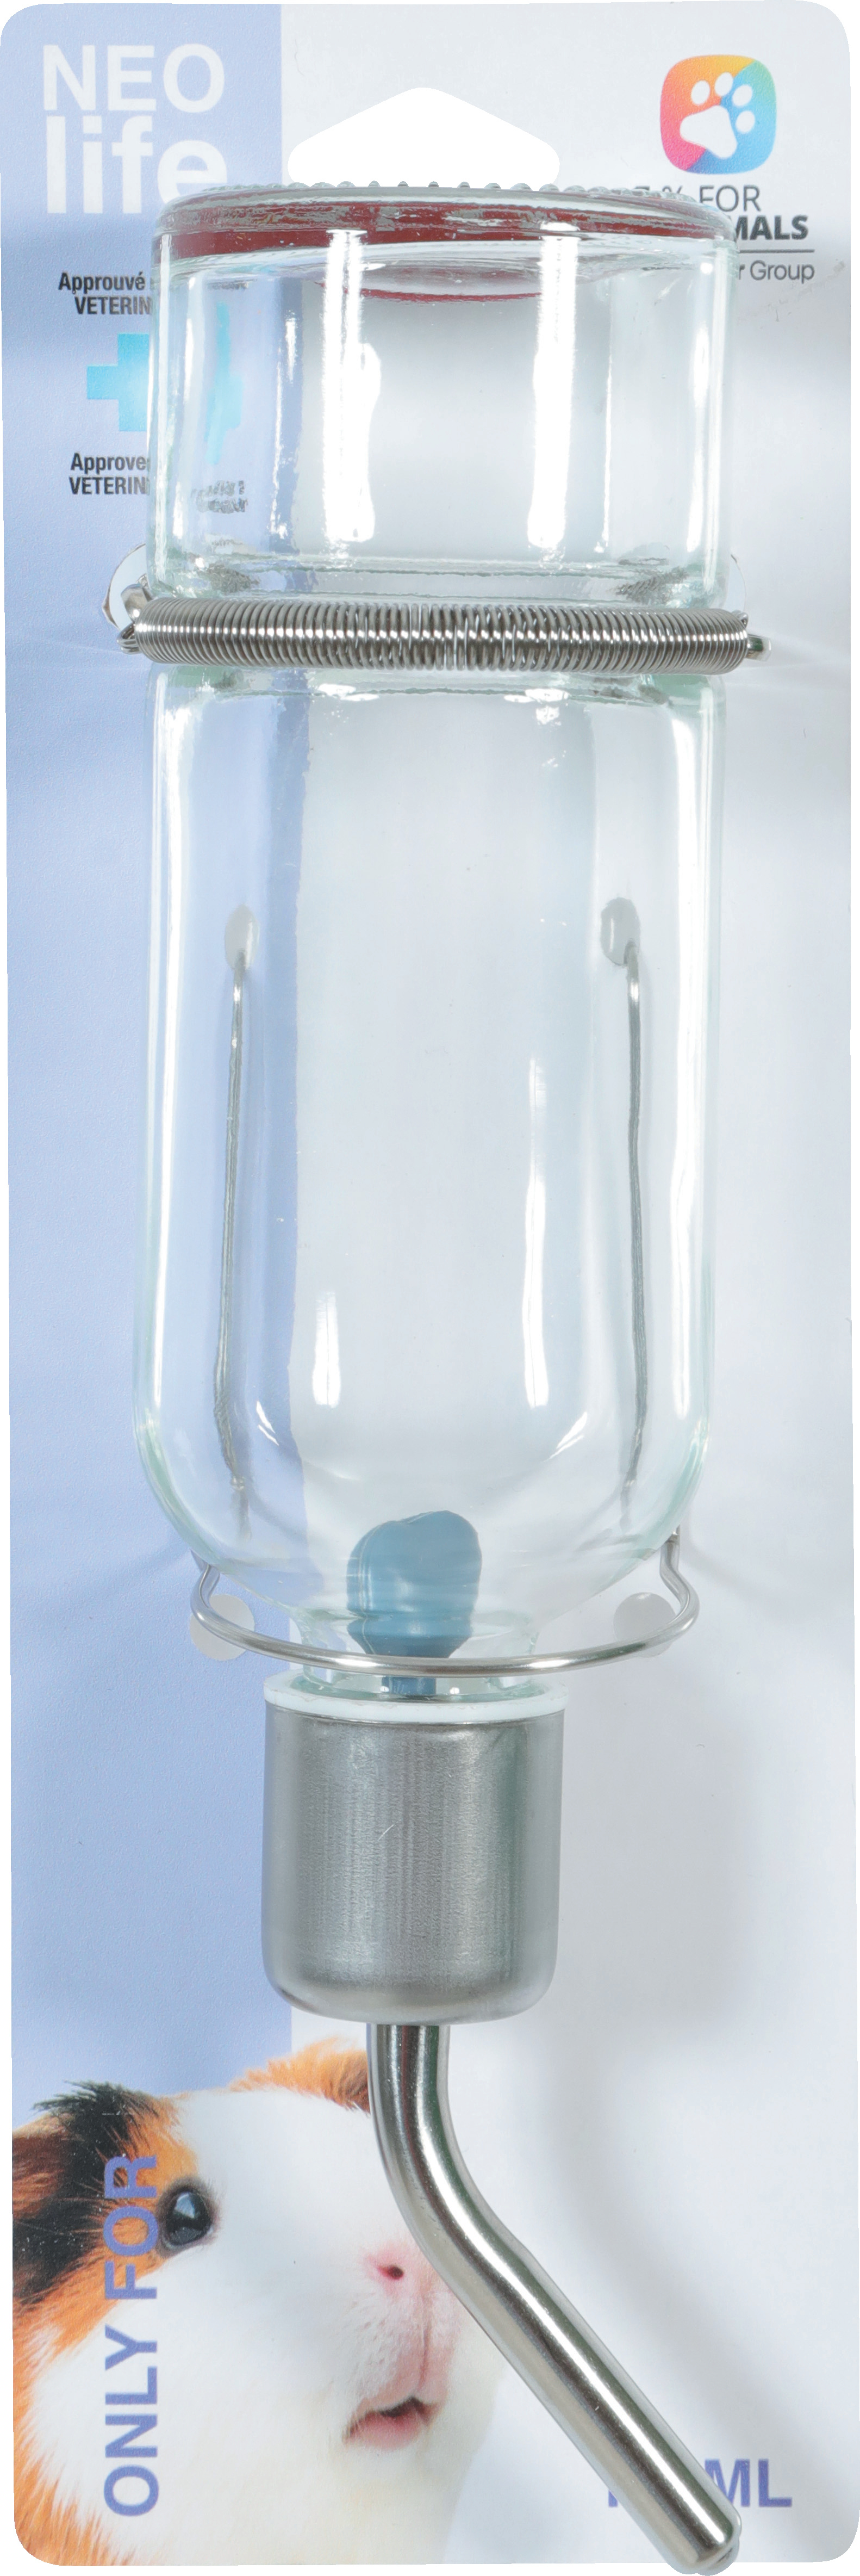 Biberón de vidrio Zolux NEOLIFE para animales pequeños - 2 tamaños disponibles